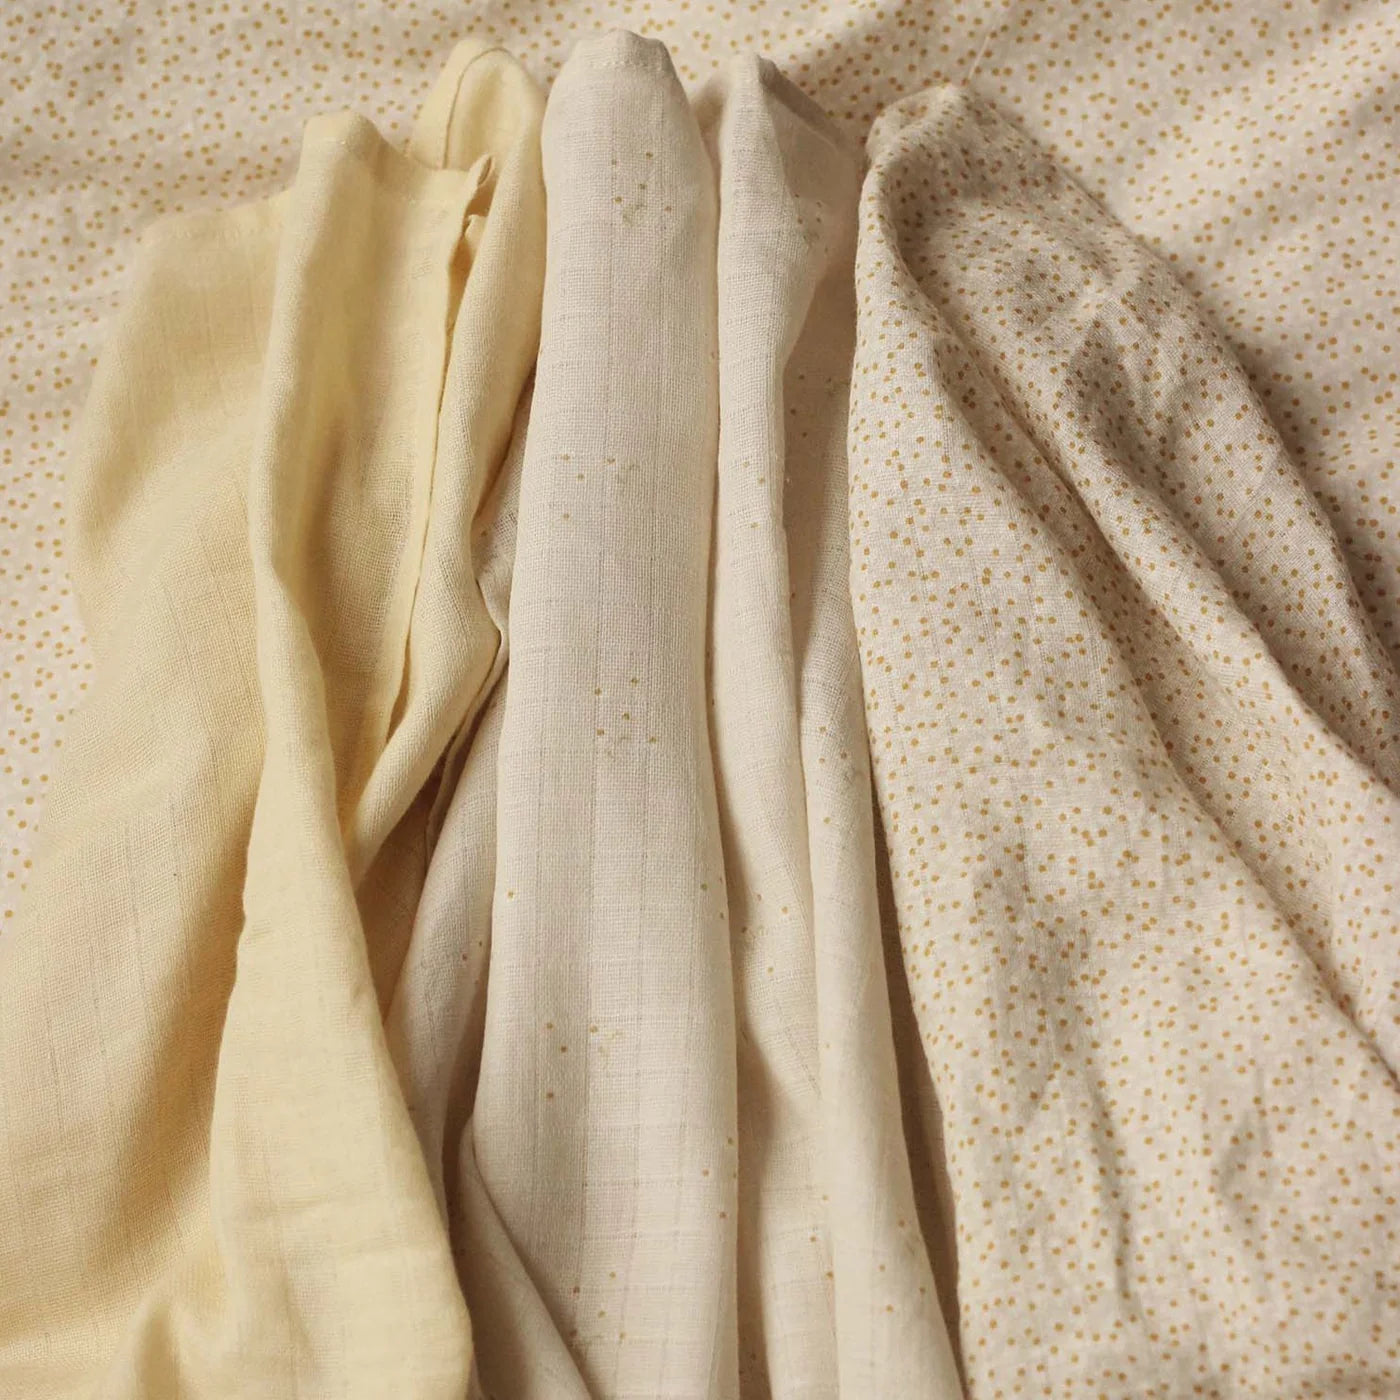 Couvertures en mousseline de coton bio Avery Row (pqt de 3) - Camomille sauvage